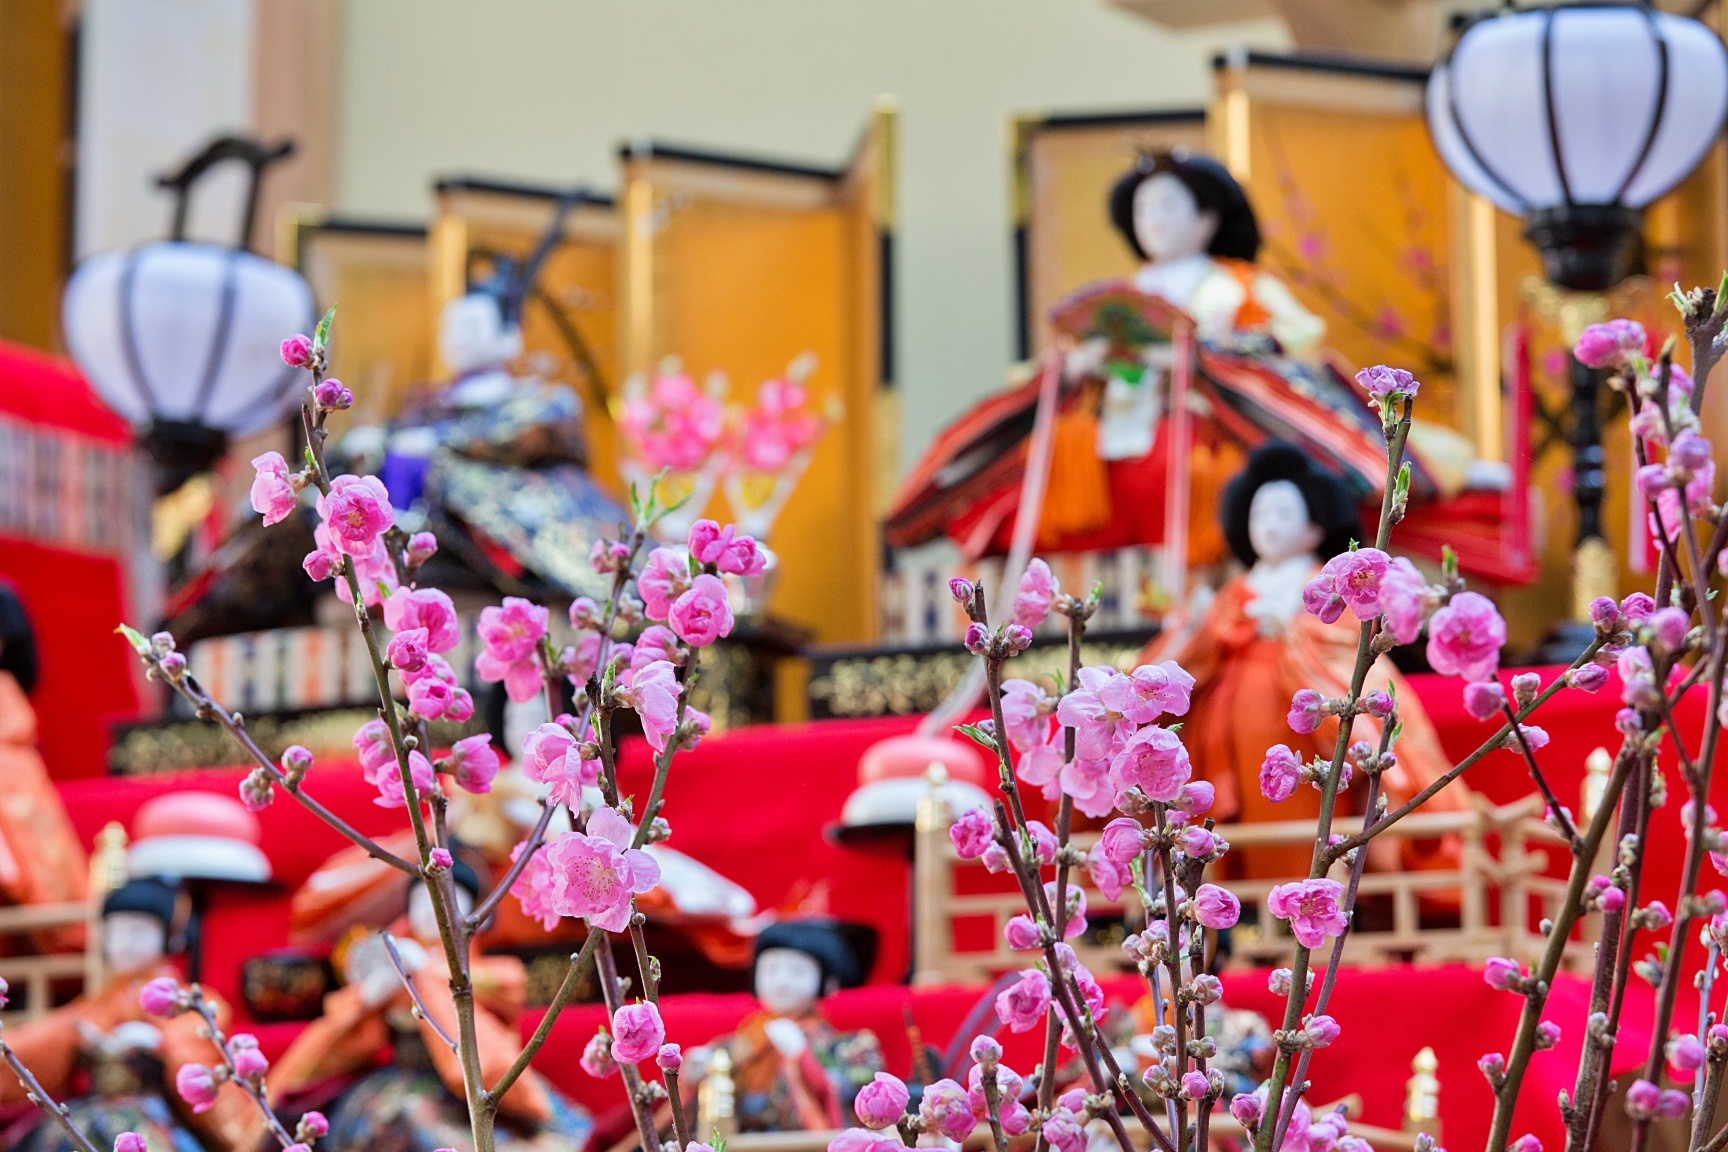 ぐんまフラワーパークで ひなまつり は花 雛人形を楽しむ 100体以上の雛人形も彩る ハナモモ人形展 を2月15日から開催 カネコ種苗 ぐんまフラワーパークのプレスリリース